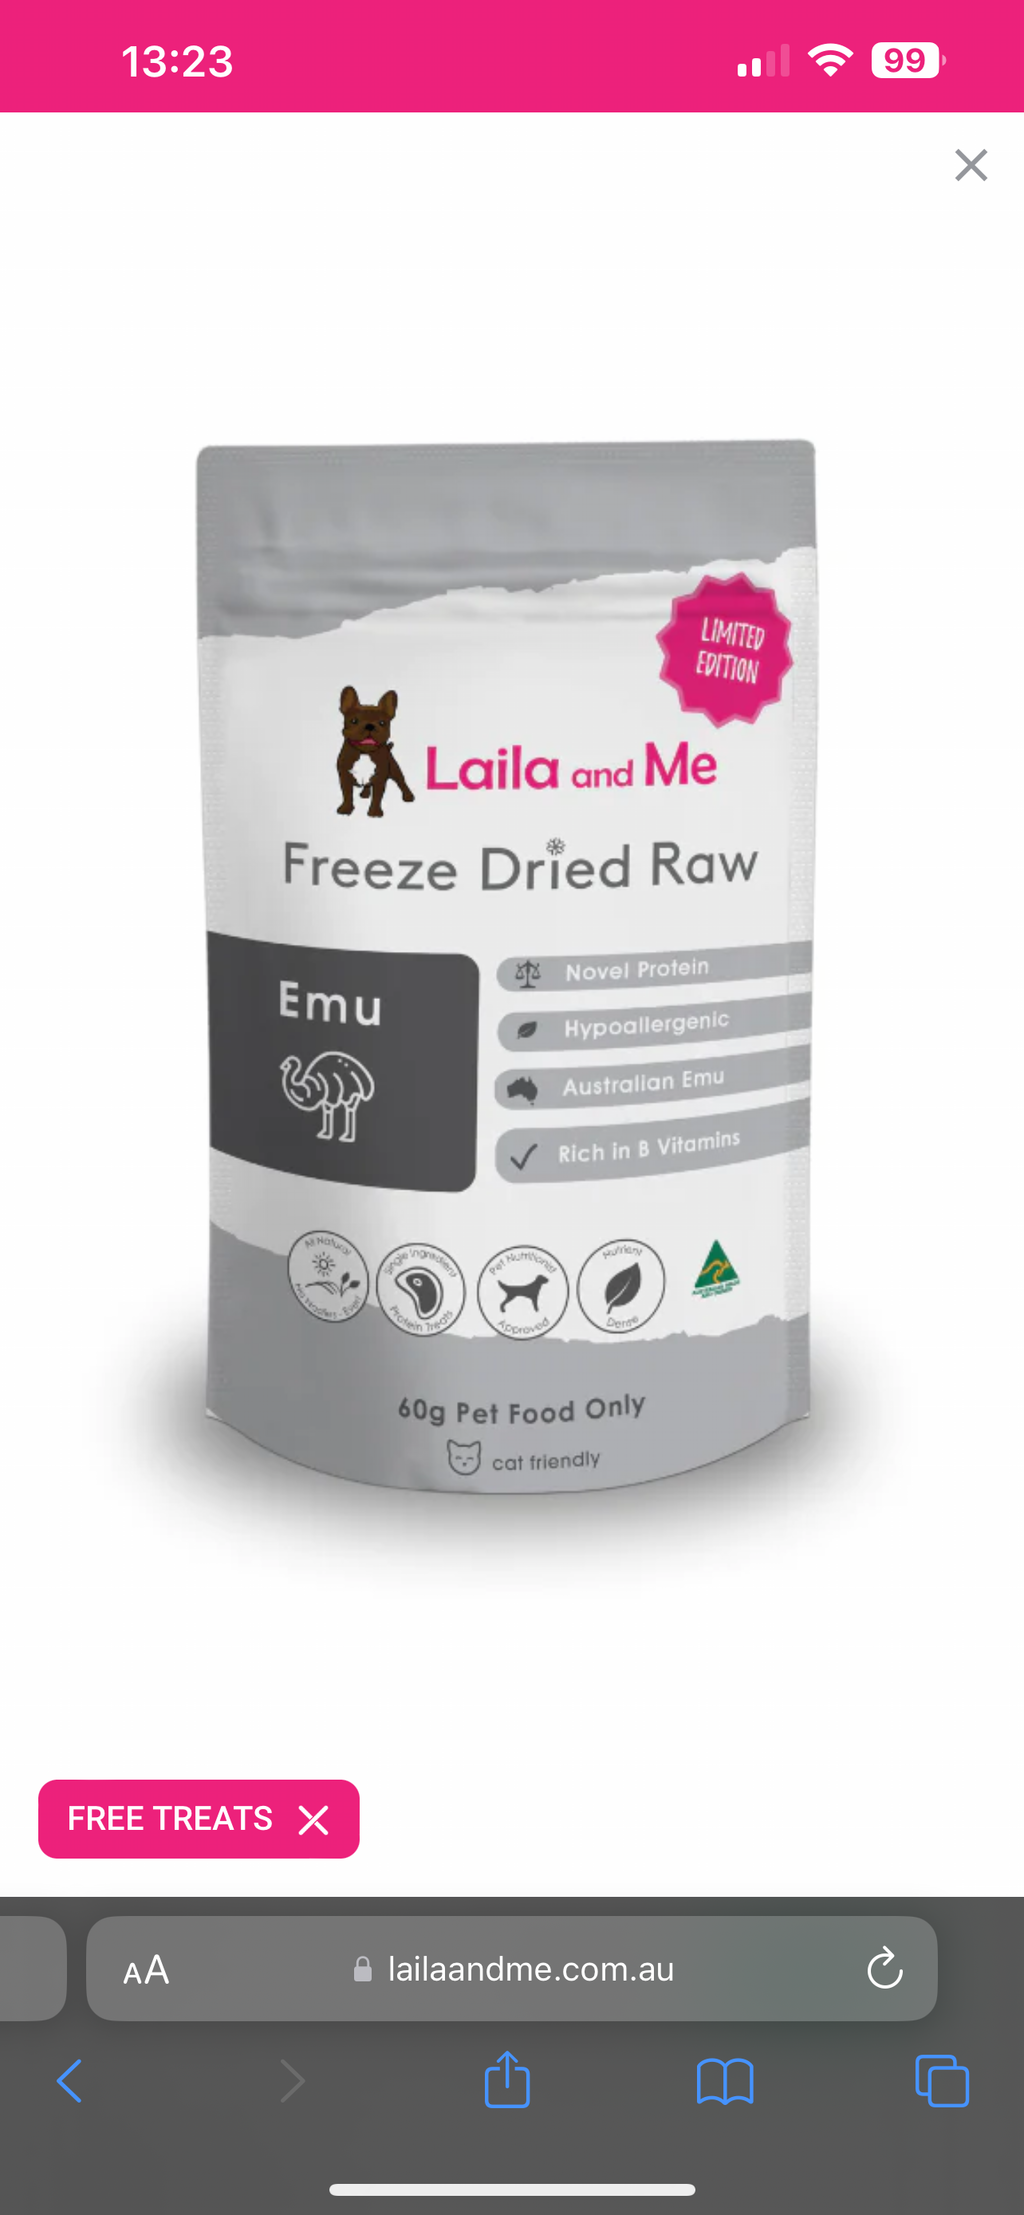 Laila & Me @ The Dog House : Freeze Dried Raw Emu